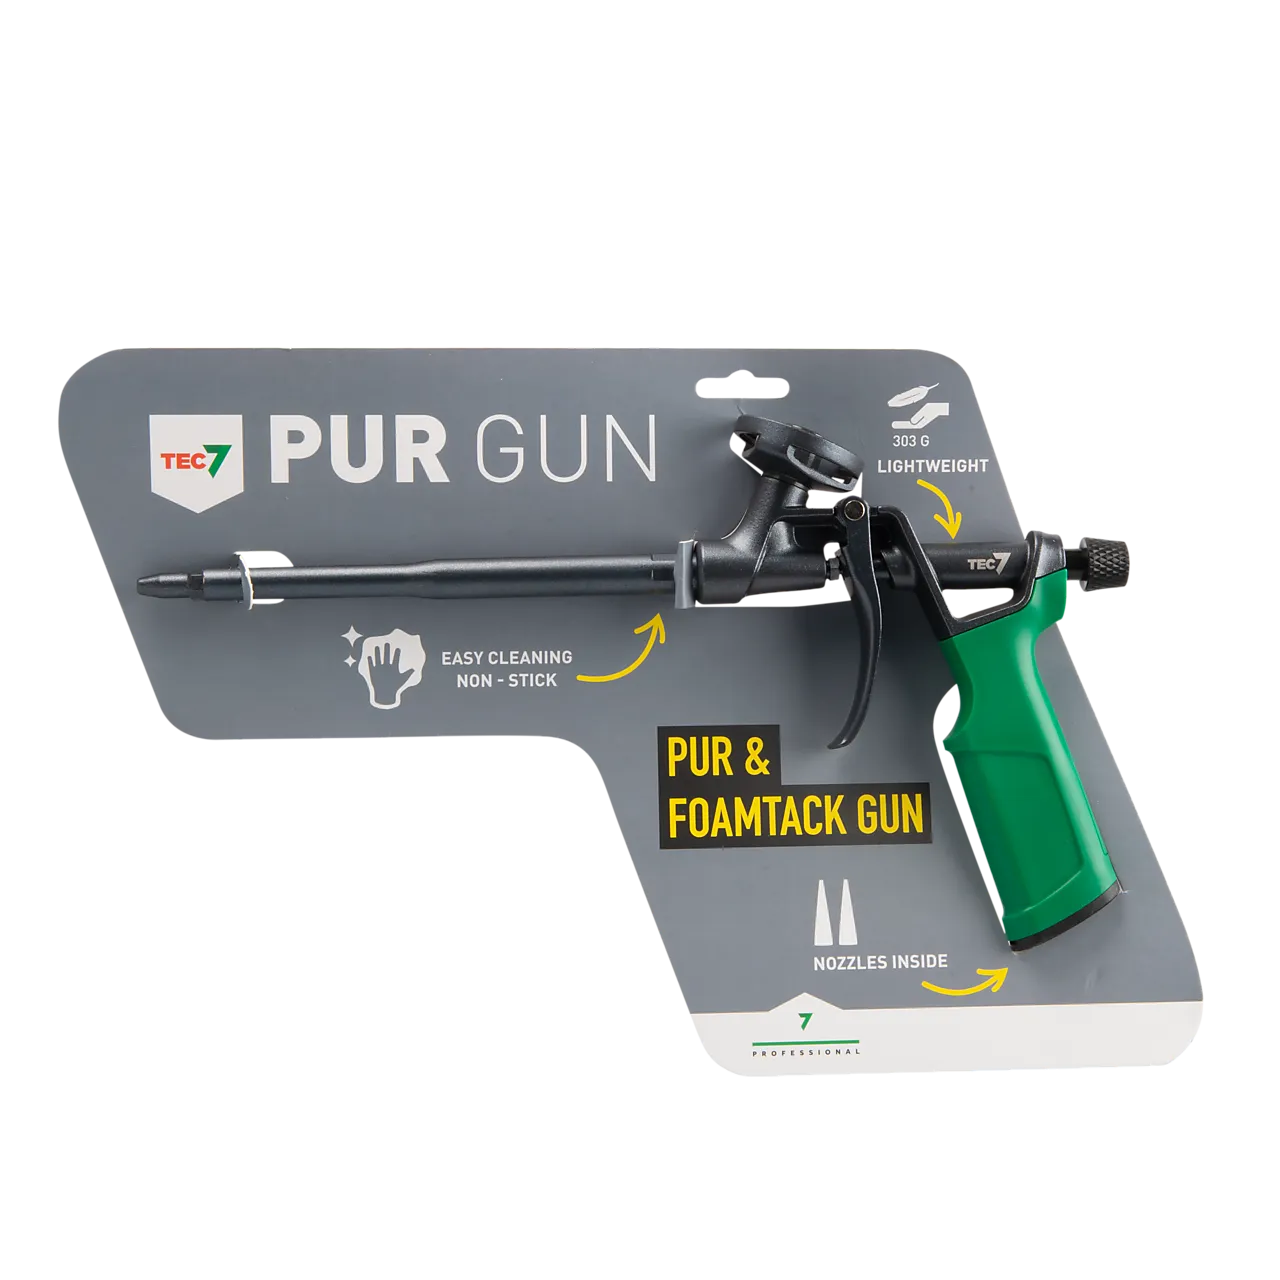 PISTOL FOR BYGGSKUM PUR7 GUN